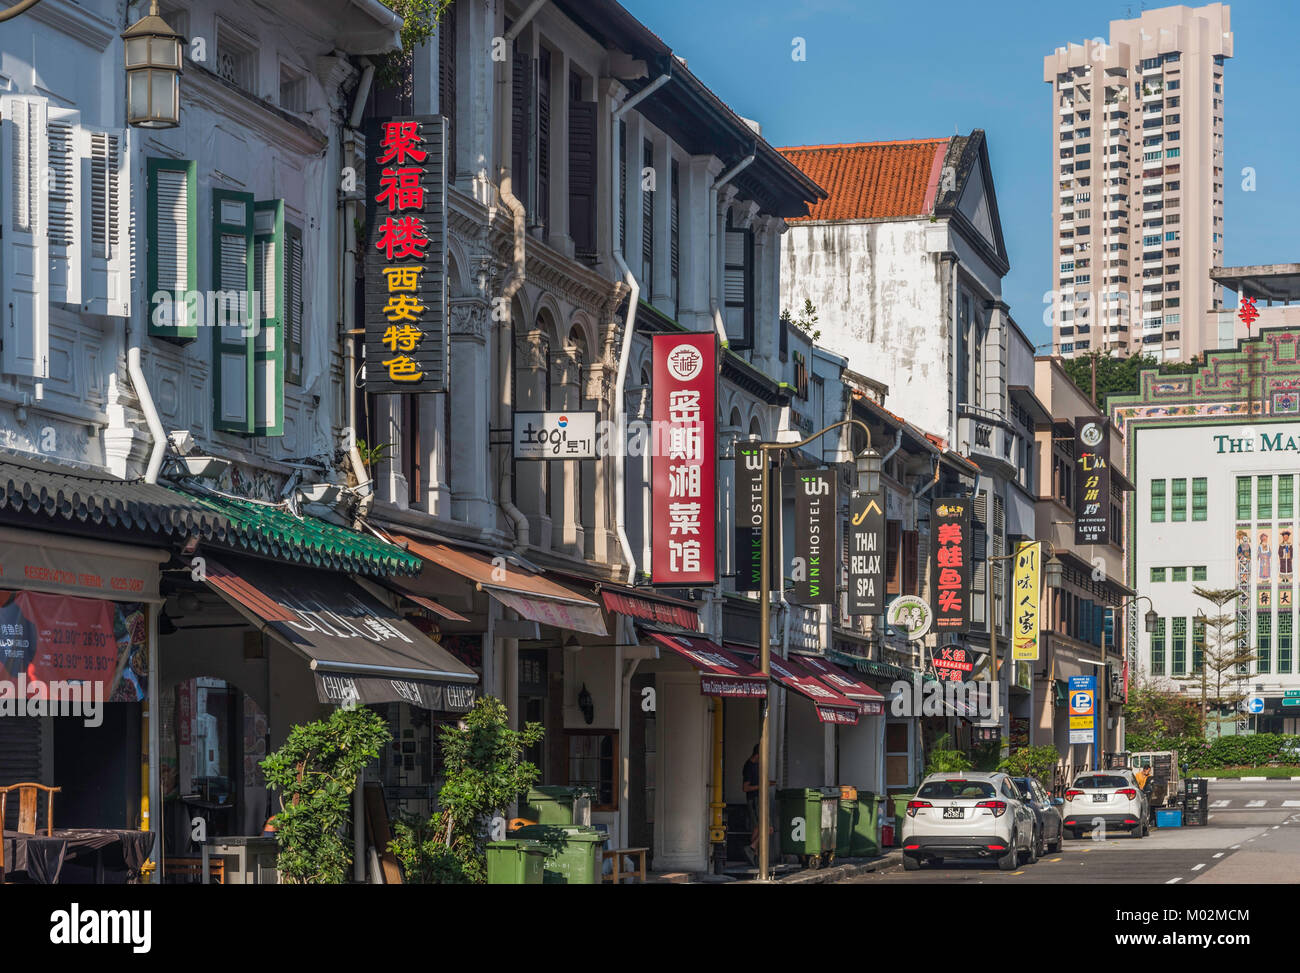 Mosque Street, Chinatown, Singapour Banque D'Images